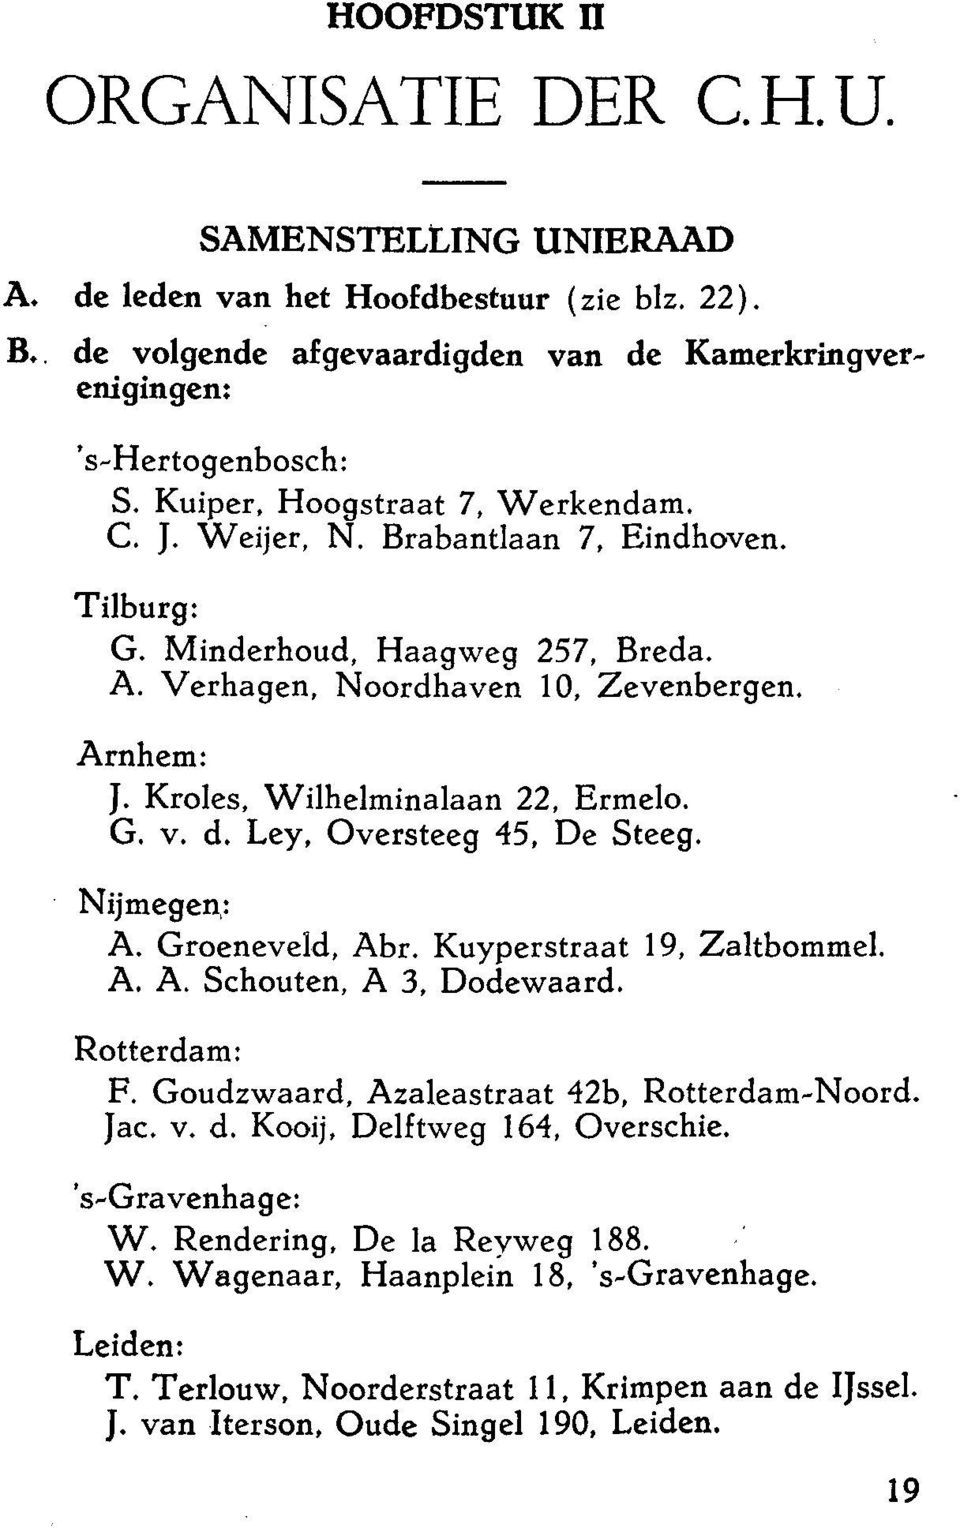 Kroles, Wilhelminalaan 22, Ermelo. G. v. d. Ley, Oversteeg 45, De Steeg. Nijmegen,: A. Groeneveld, Abr. Kuyperstraat 19, Zaltbommel. A. A. Schouten, A 3, Dodewaard. Rotterdam: F.